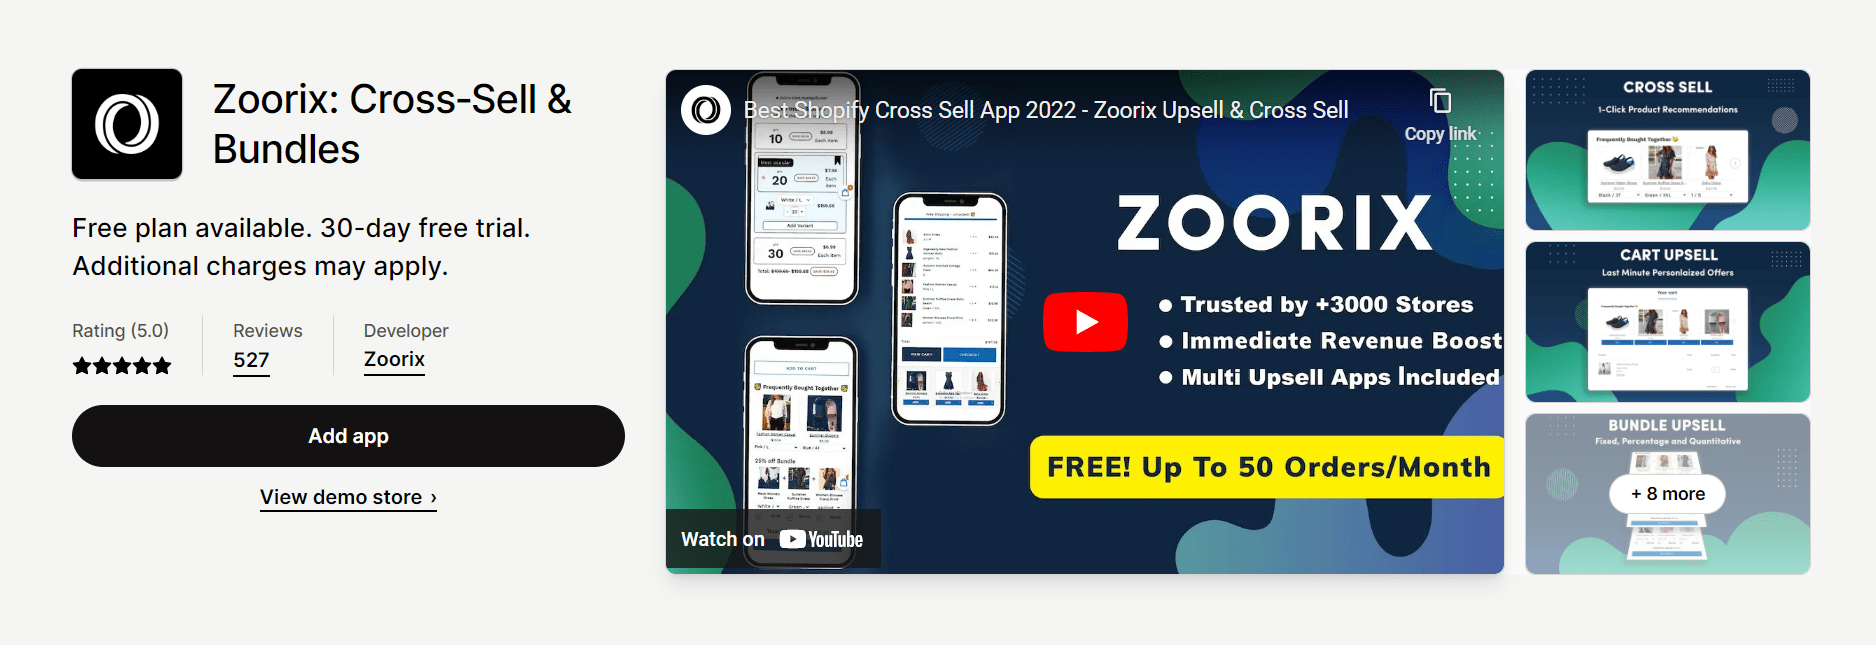 Zoorix Cross-Sells